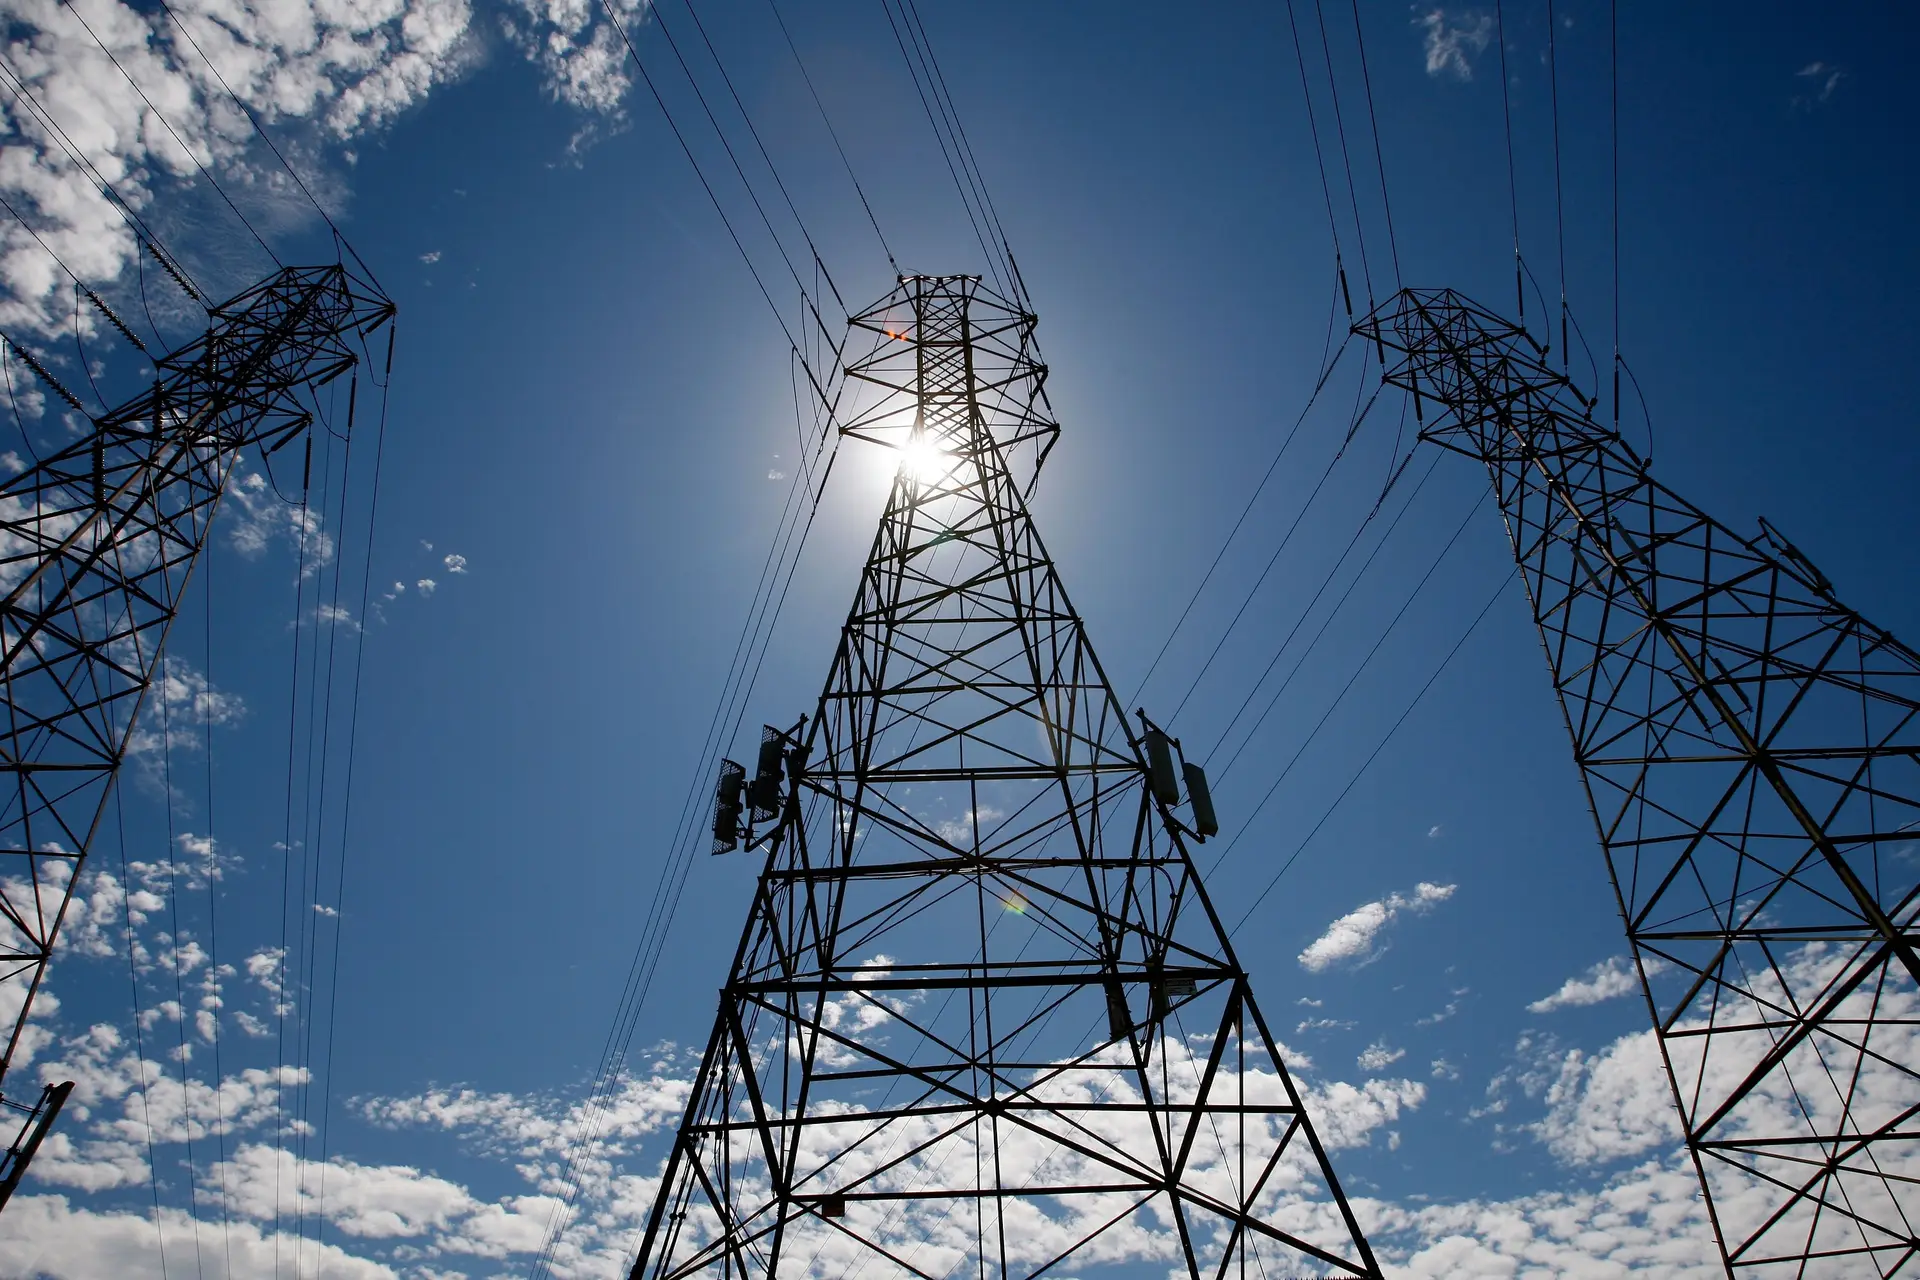 Relatório aponta para constrangimentos na rede elétrica europeia na próxima década